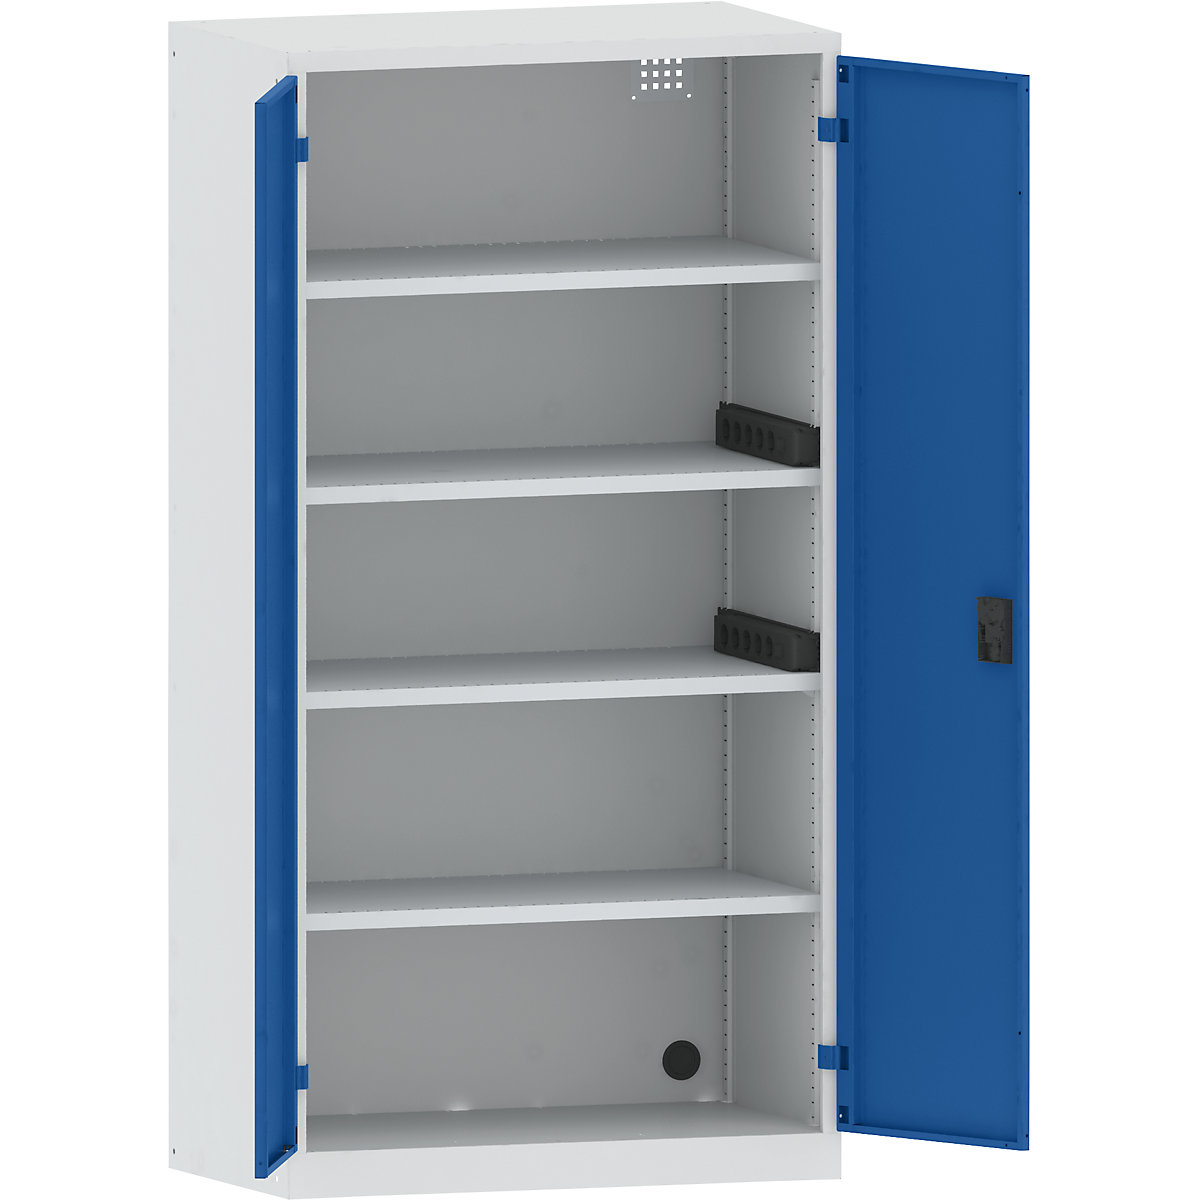 Omara za polnjenje akumulatorjev – LISTA, 4 police, vrata iz polne pločevine, 2 letvi za napeljavo ob strani, sive / modre barve-6